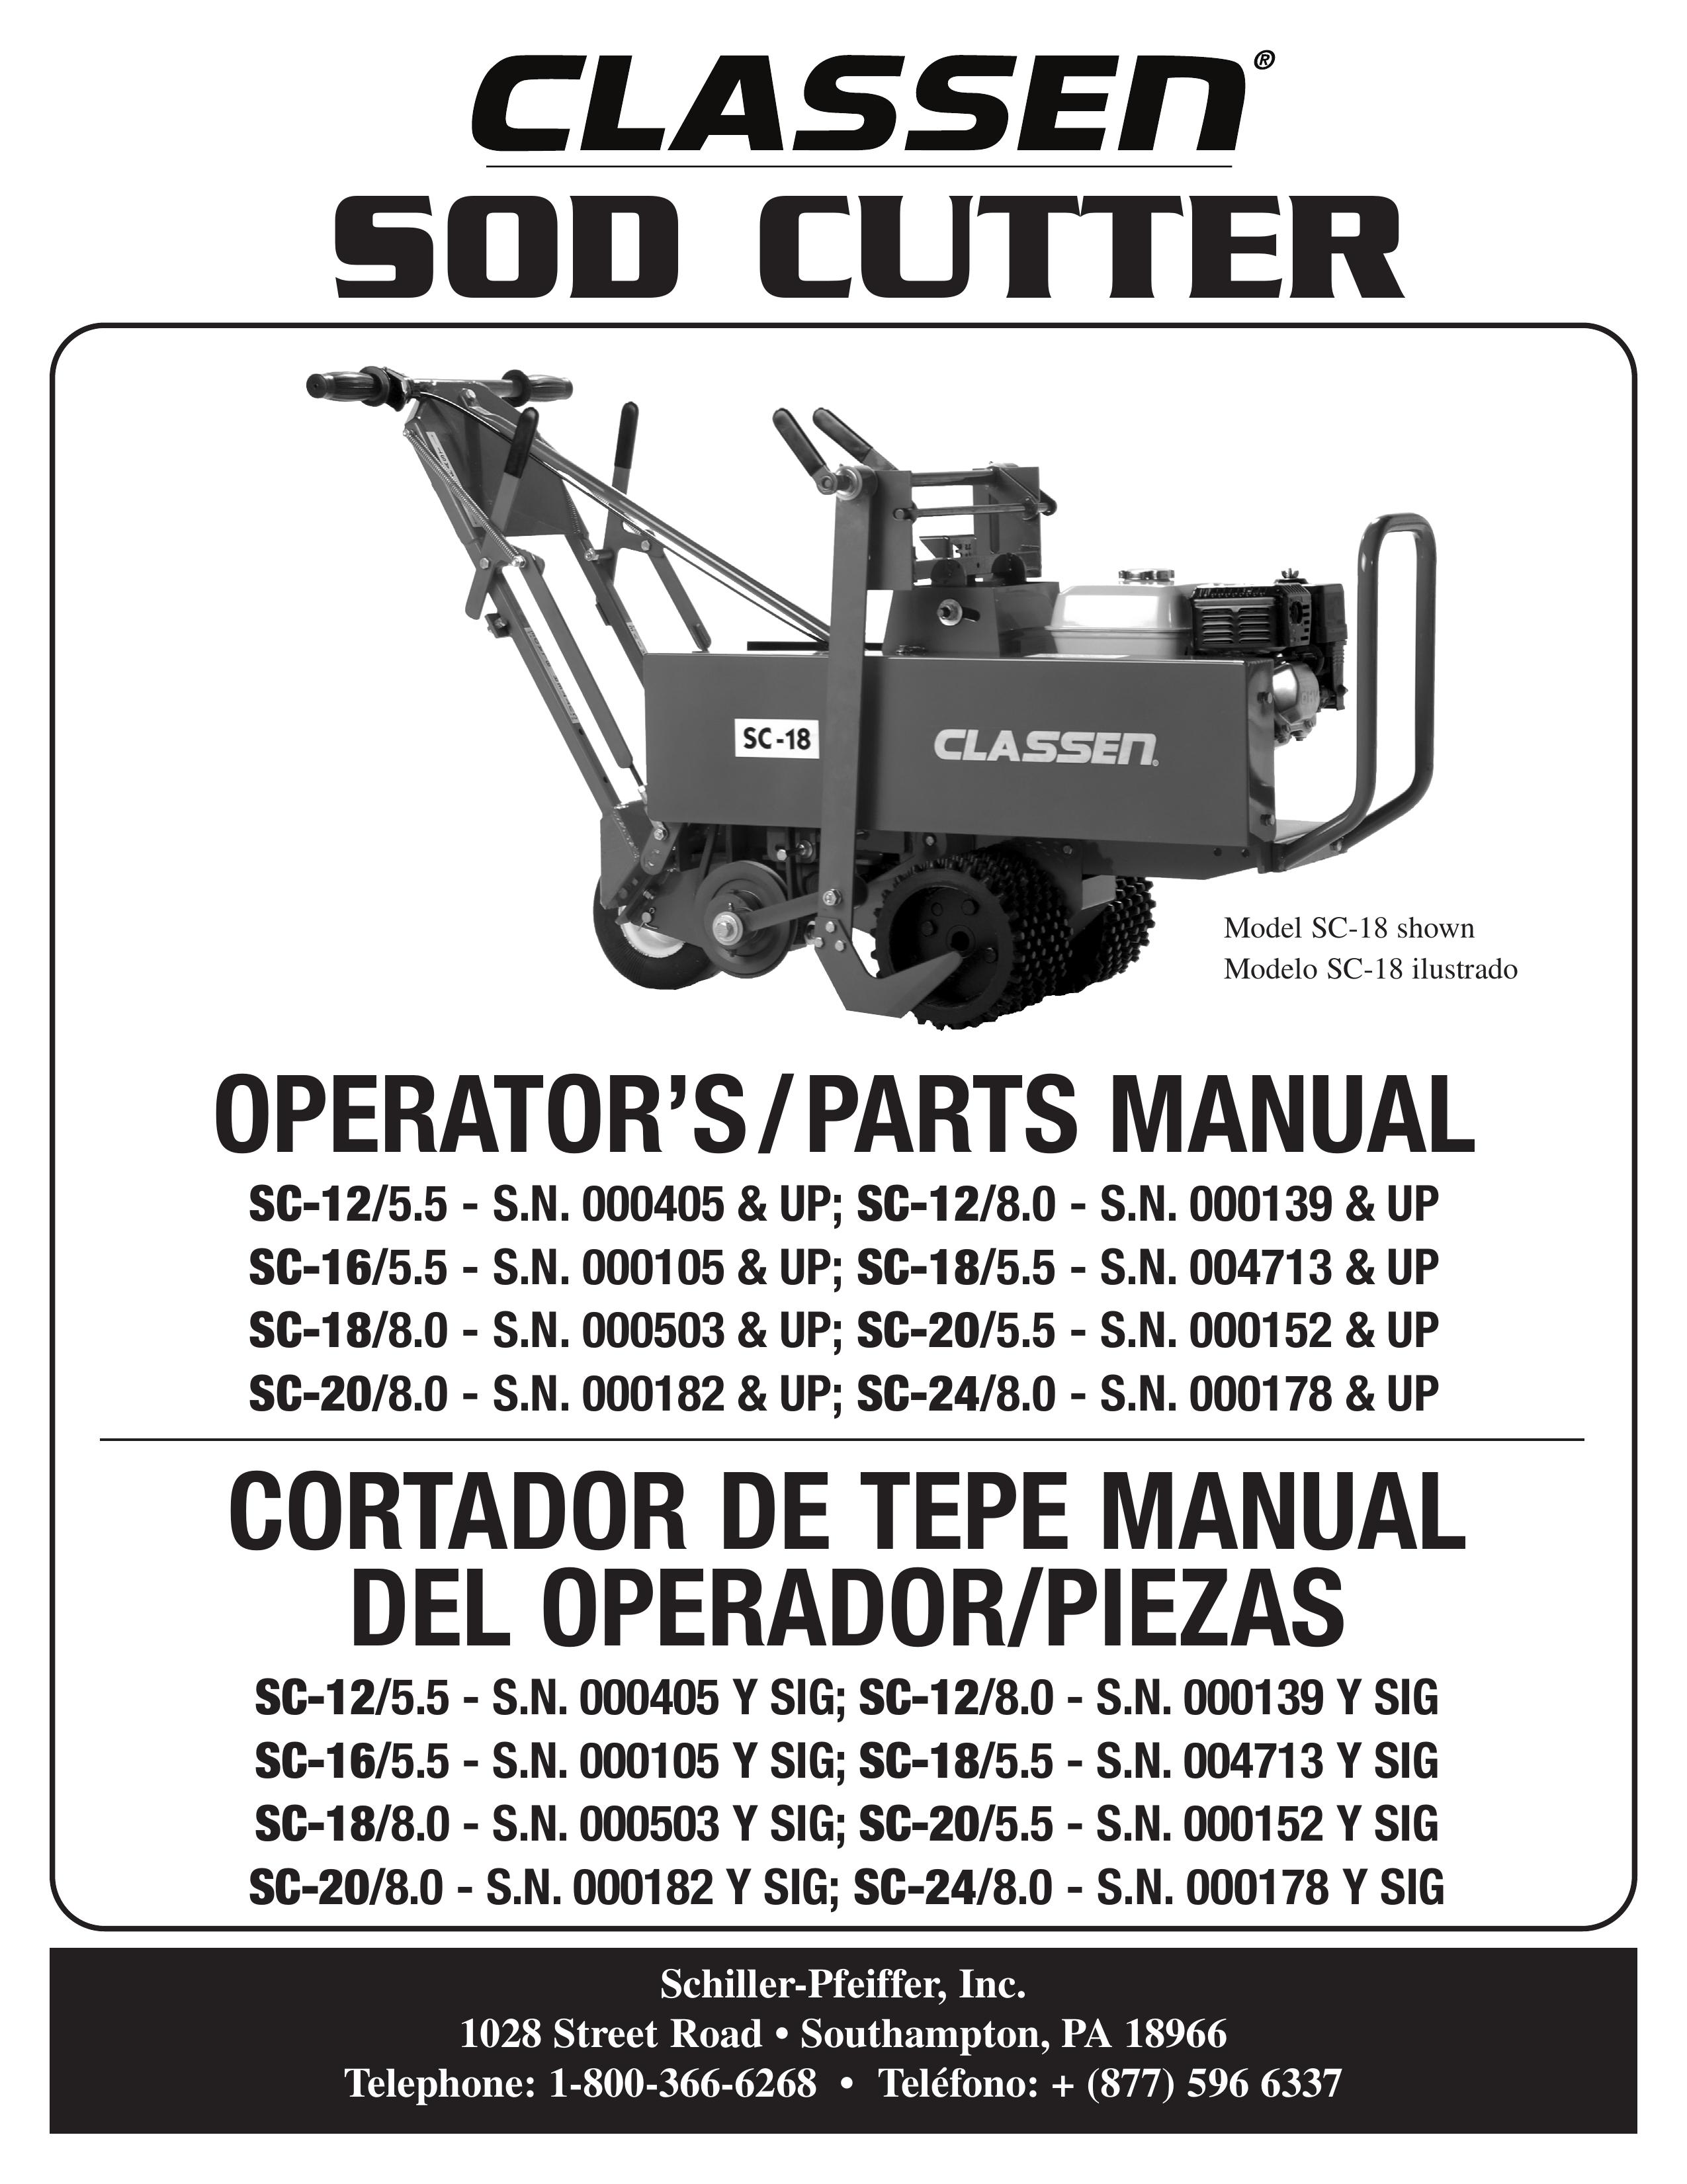 Classen SC-16/5.5 Brush Cutter User Manual